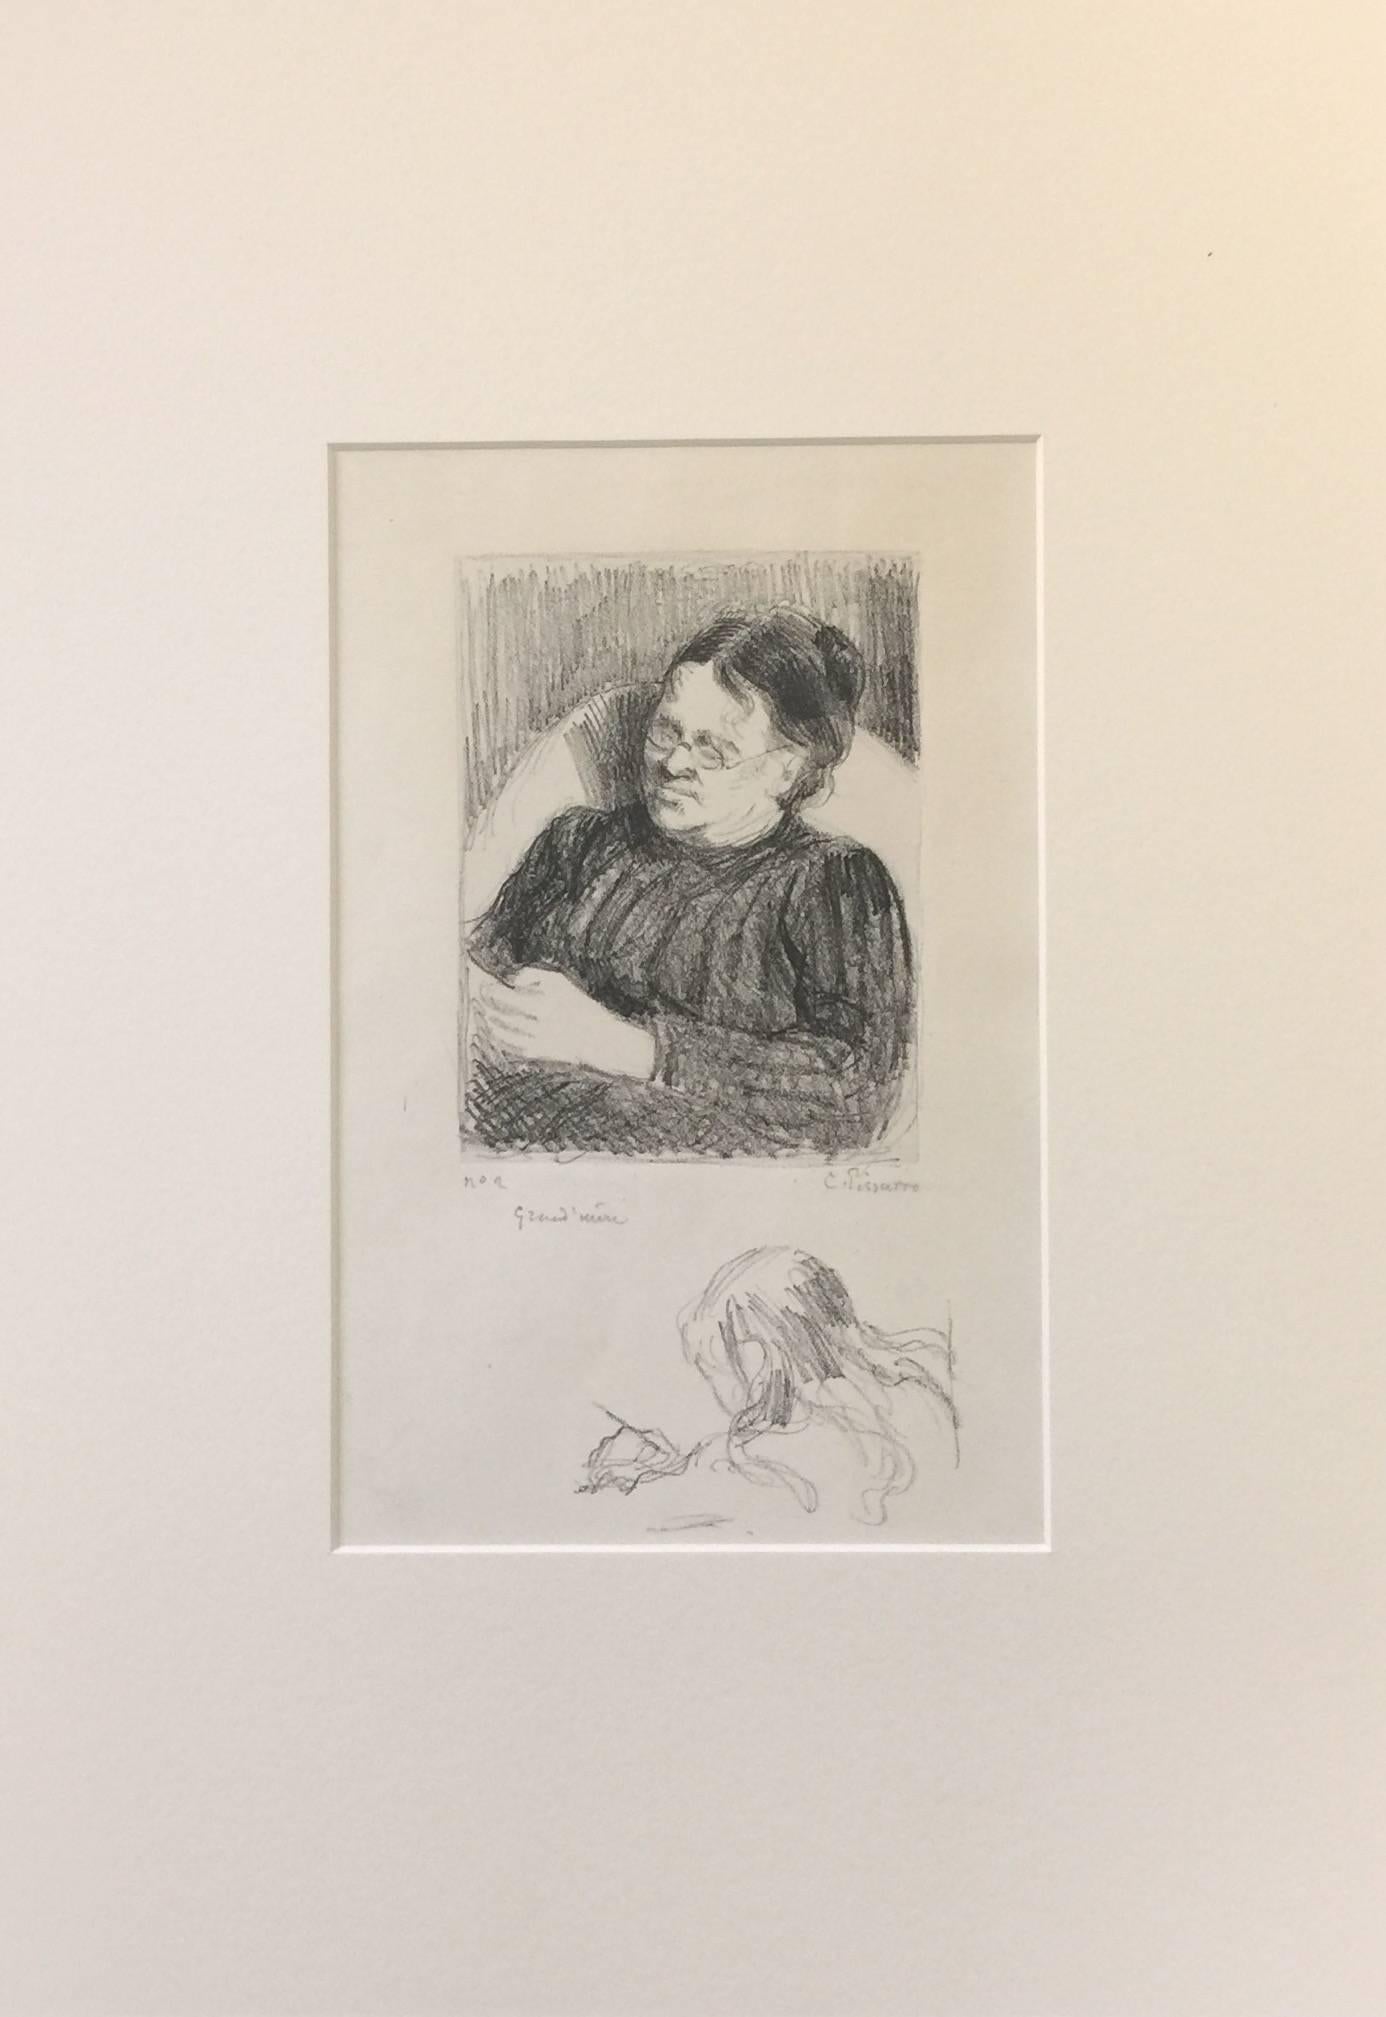 Grand'mère - Portrait de la femme de l'artiste - Lithograph 1895 - Print by Camille Pissarro